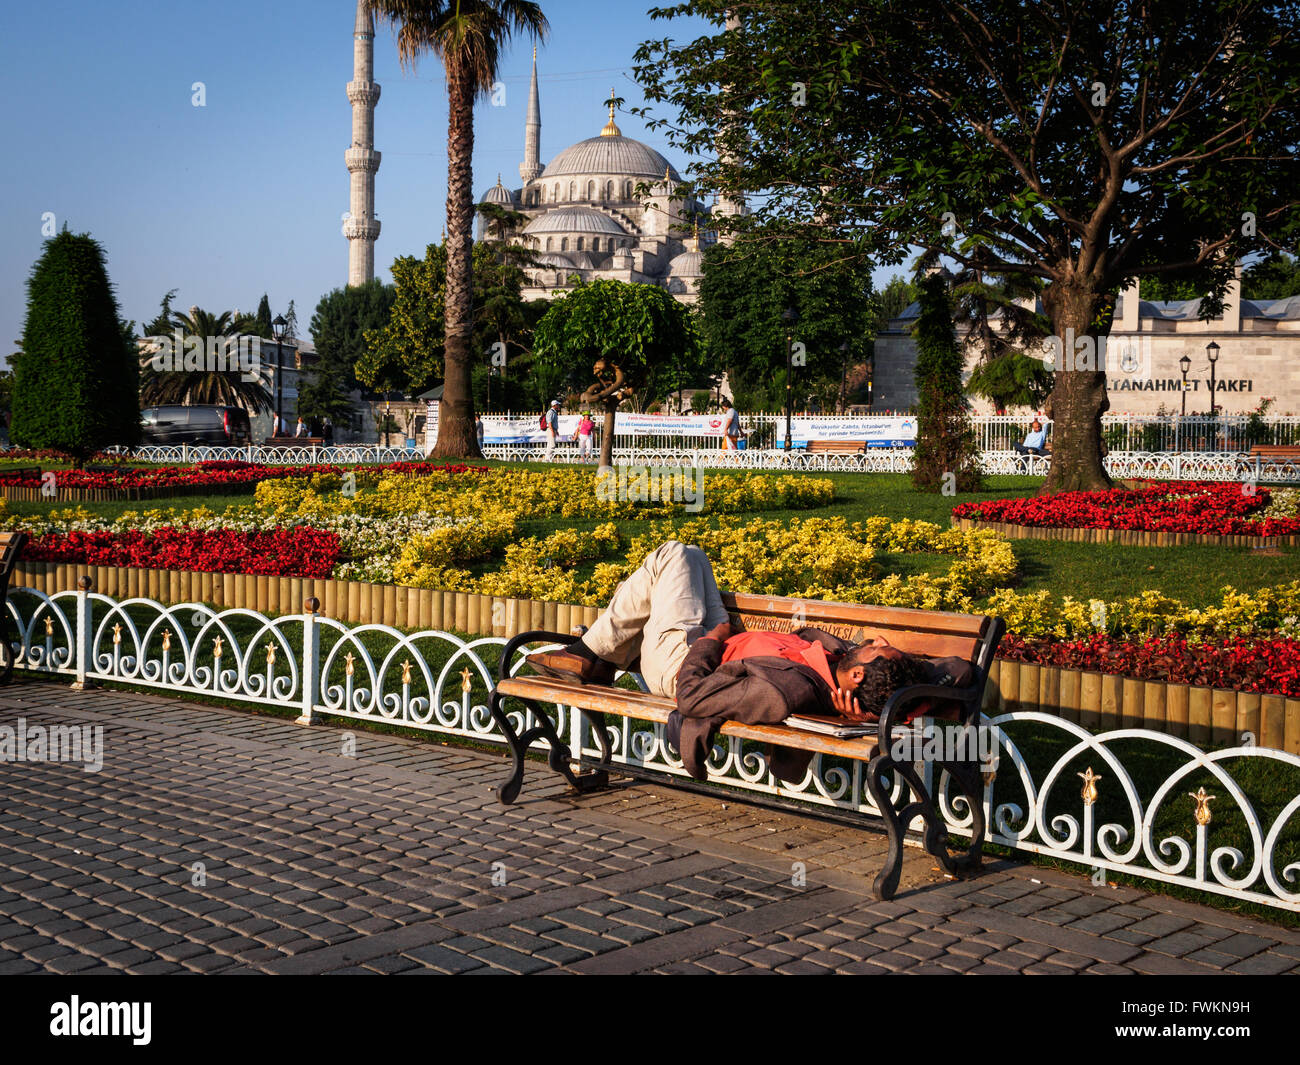 Obdachloser schlafen morgen auf Bank im Park vor der blauen Moschee (Sultan Ahmed Mosque) in Istanbul, Türkei Stockfoto